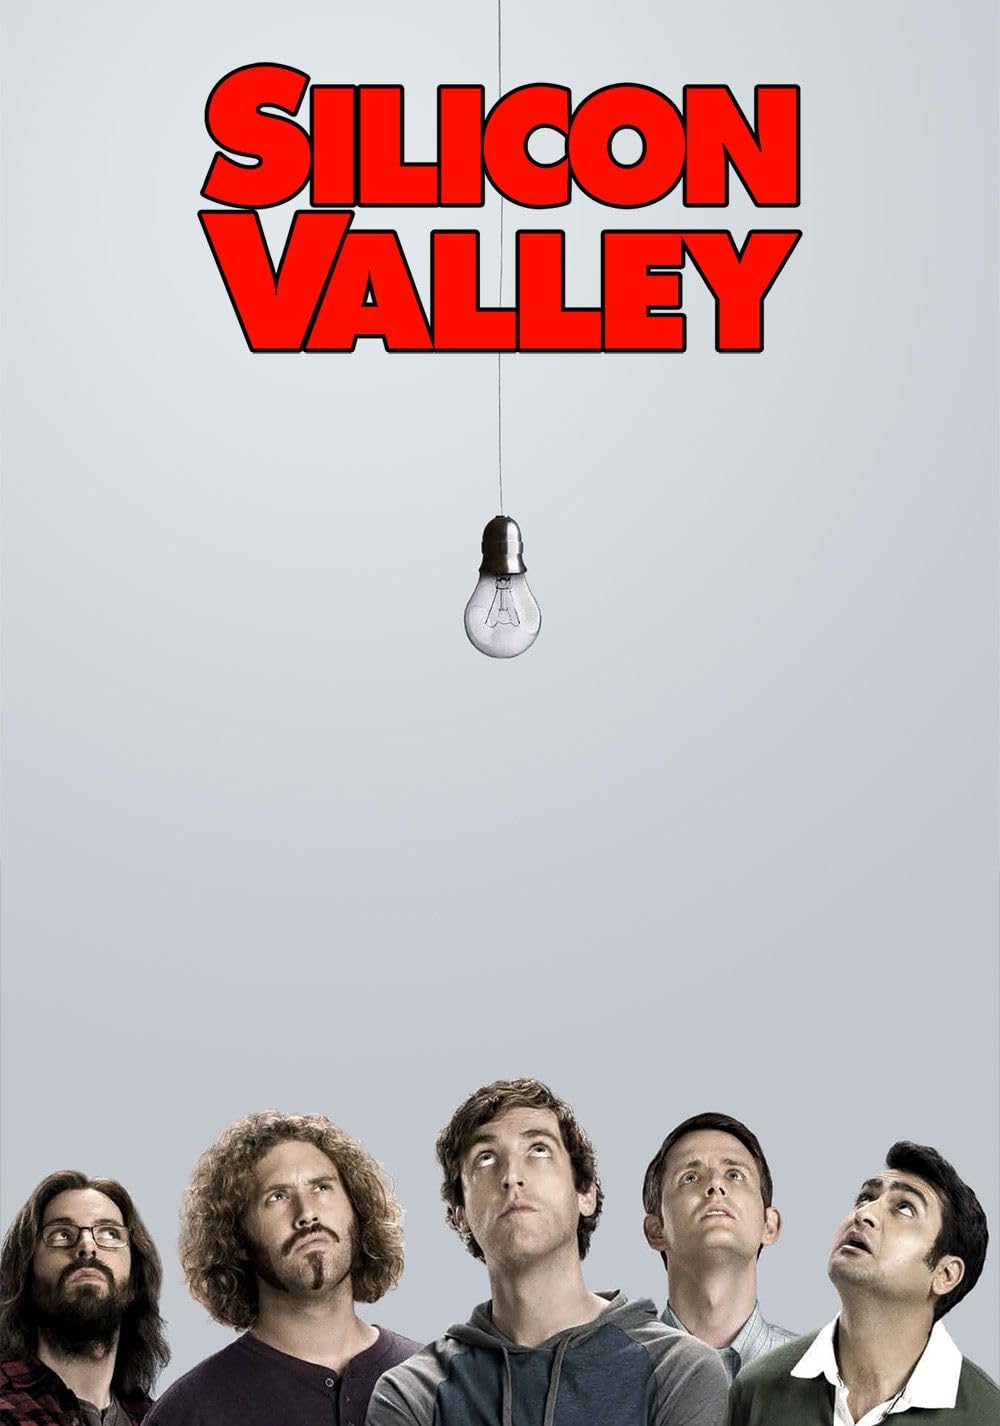 silicon valley season 1 episode 1 free download